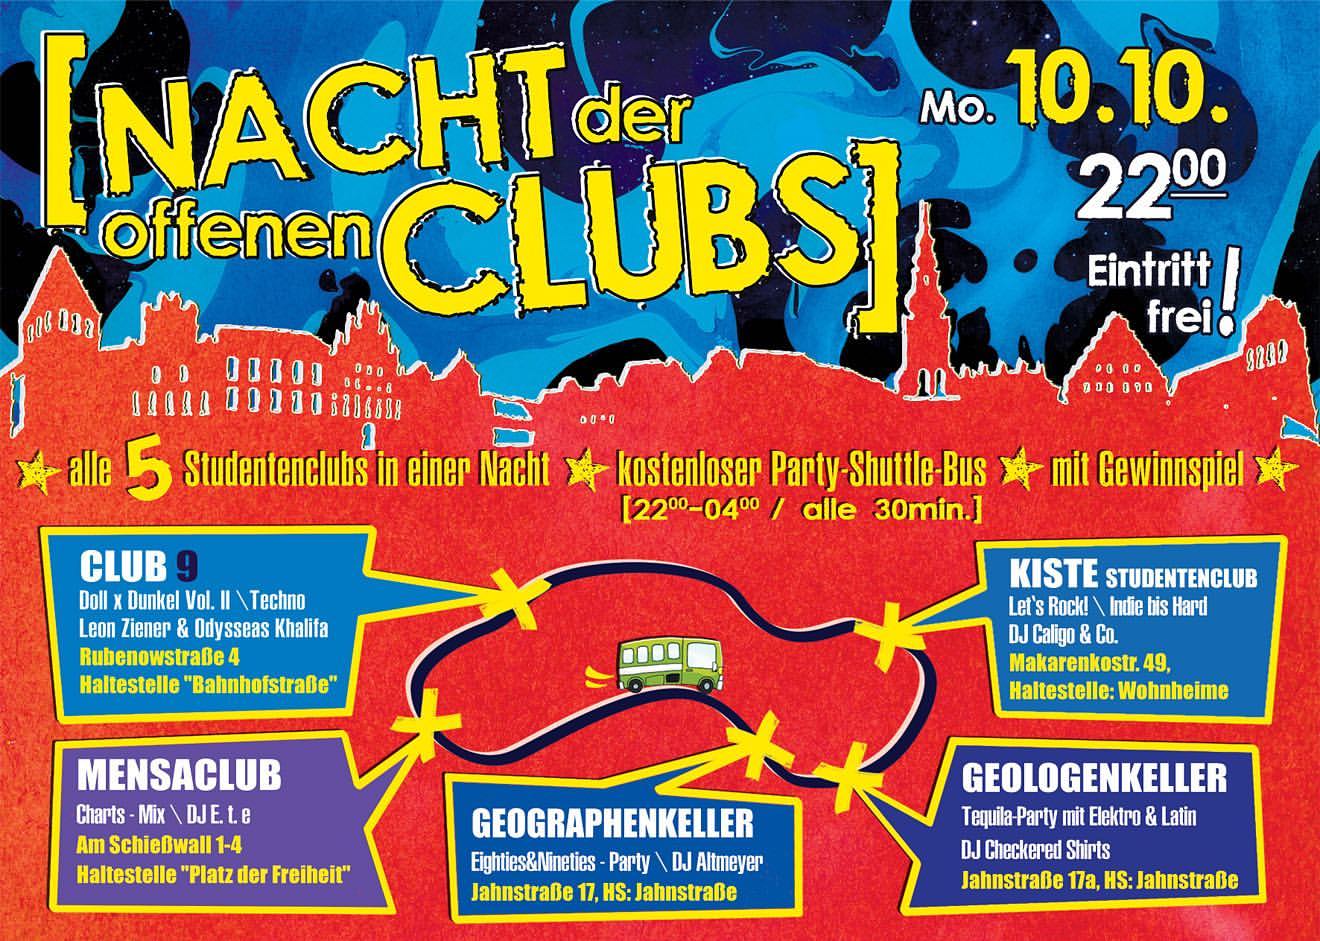 Nacht der offenen Clubs in Greifswald: Studentenclub Kiste